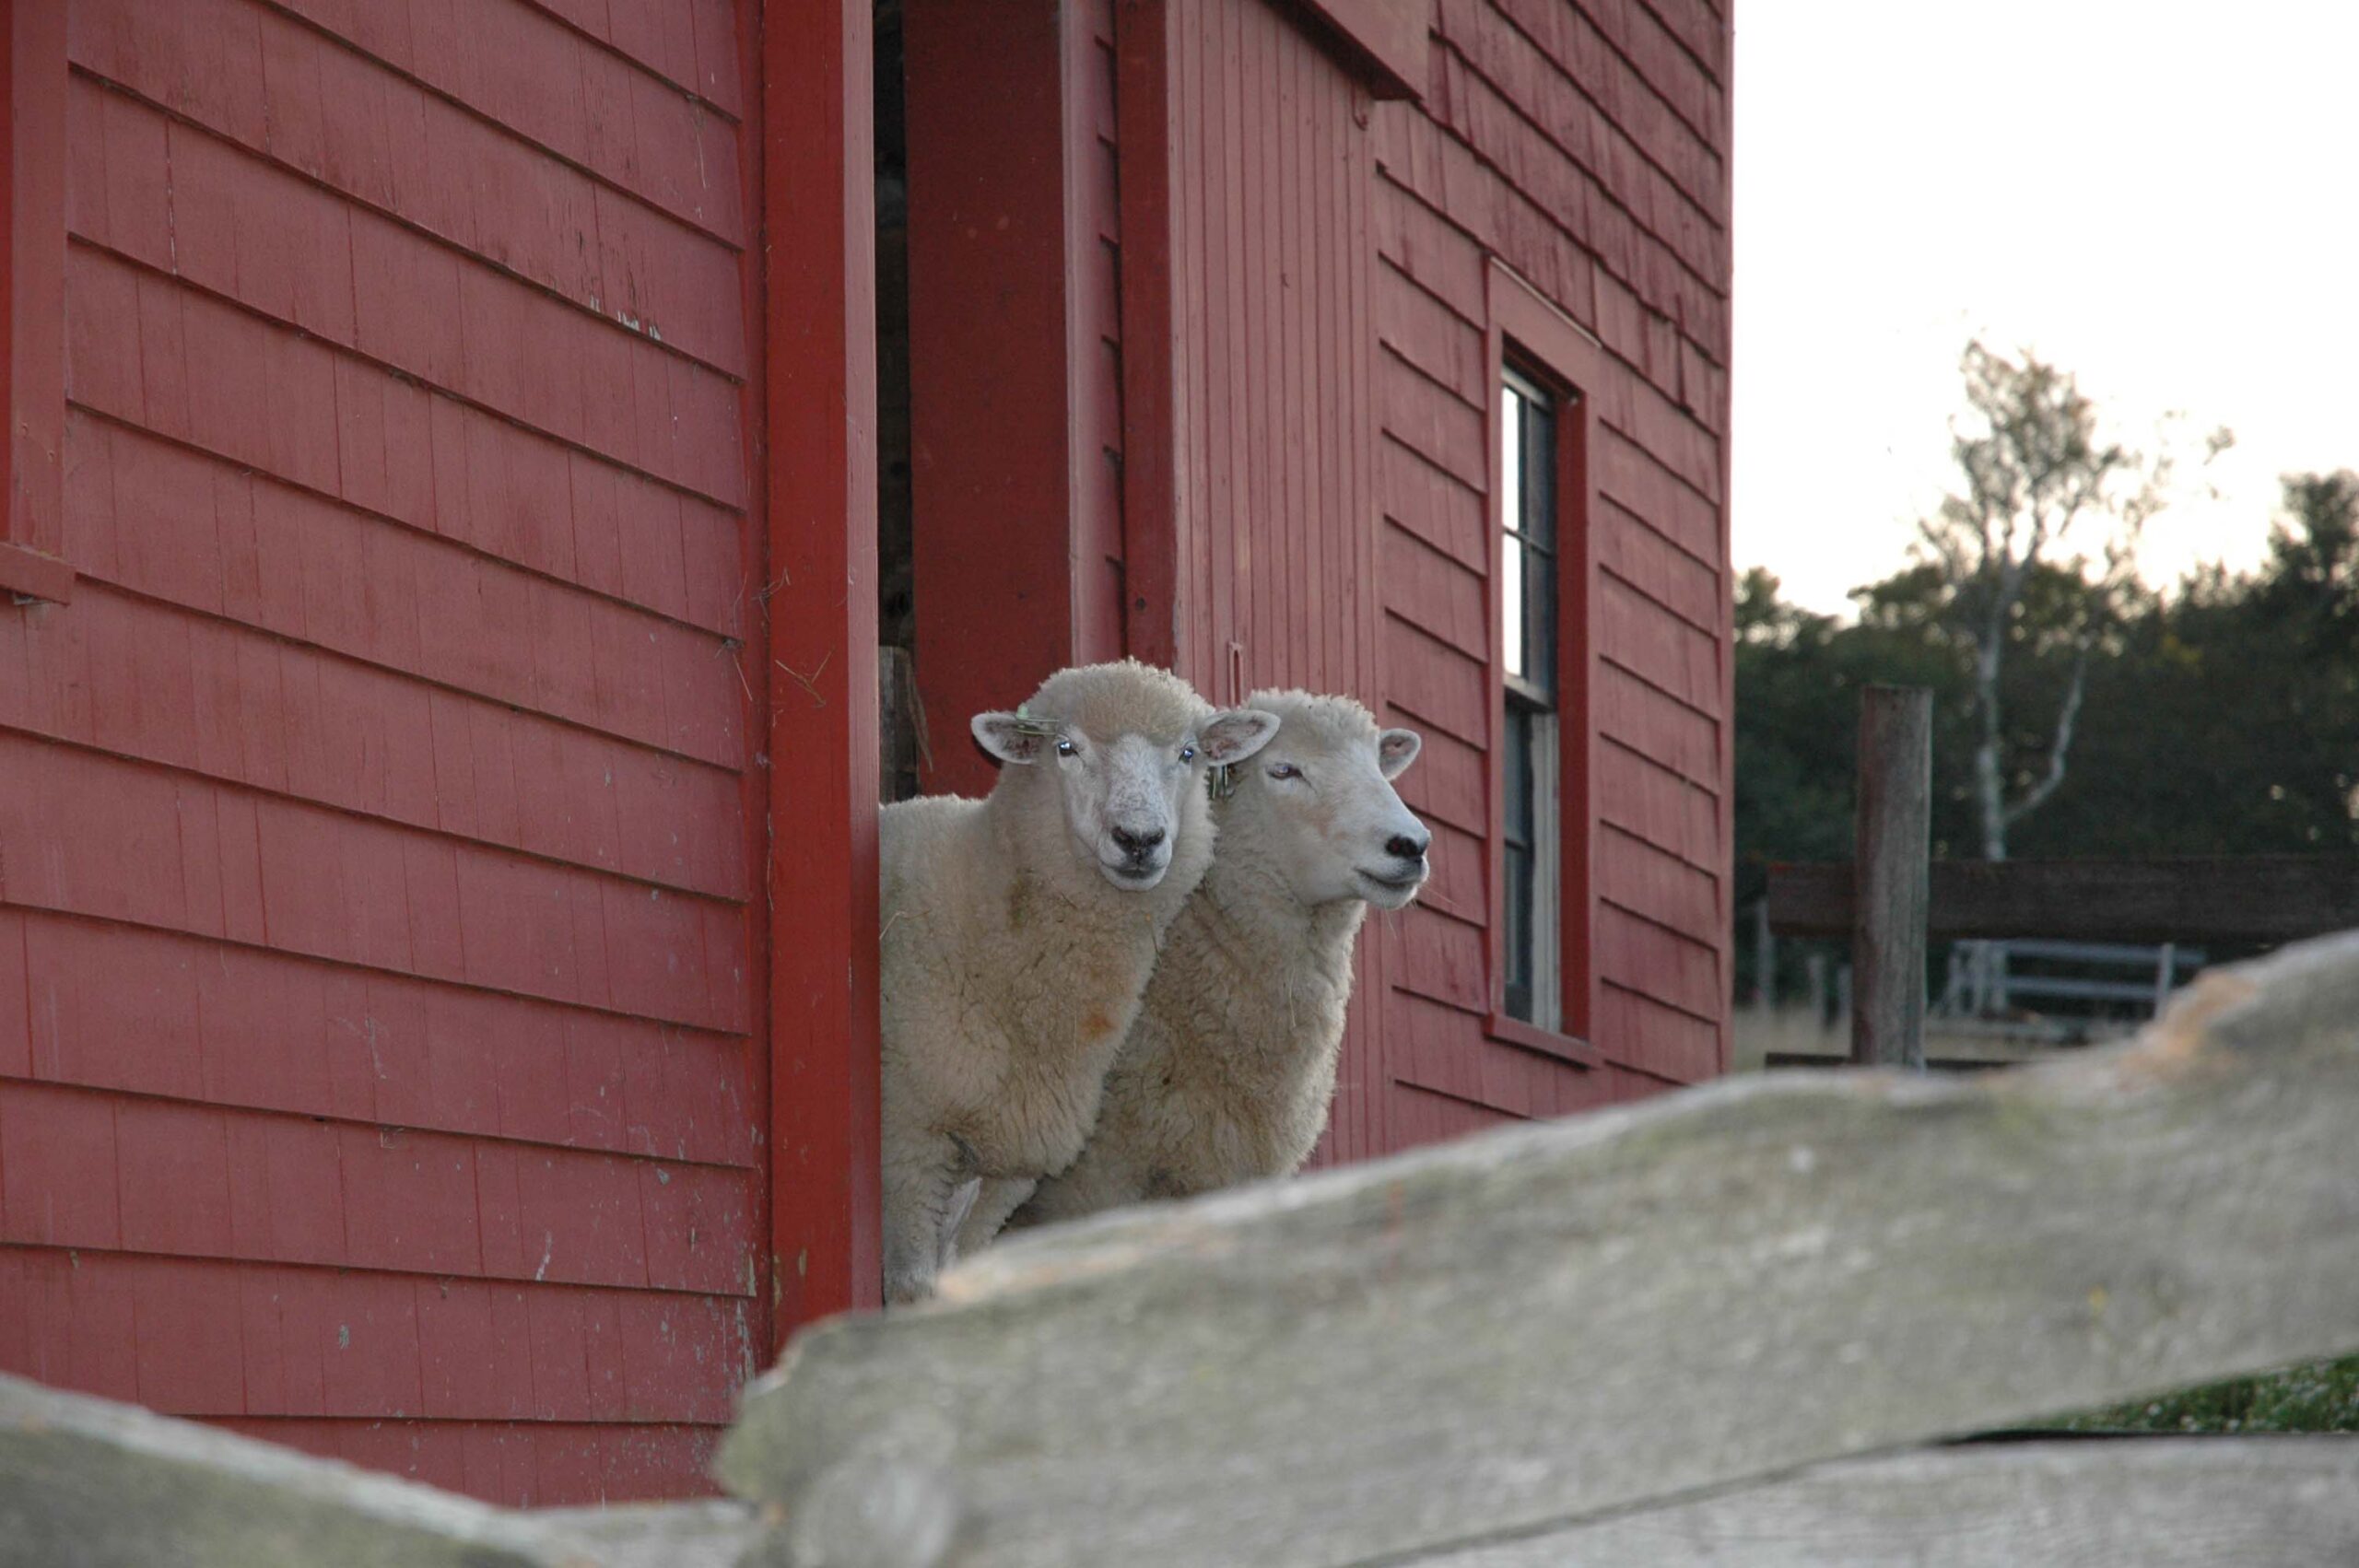 Sheep Barn